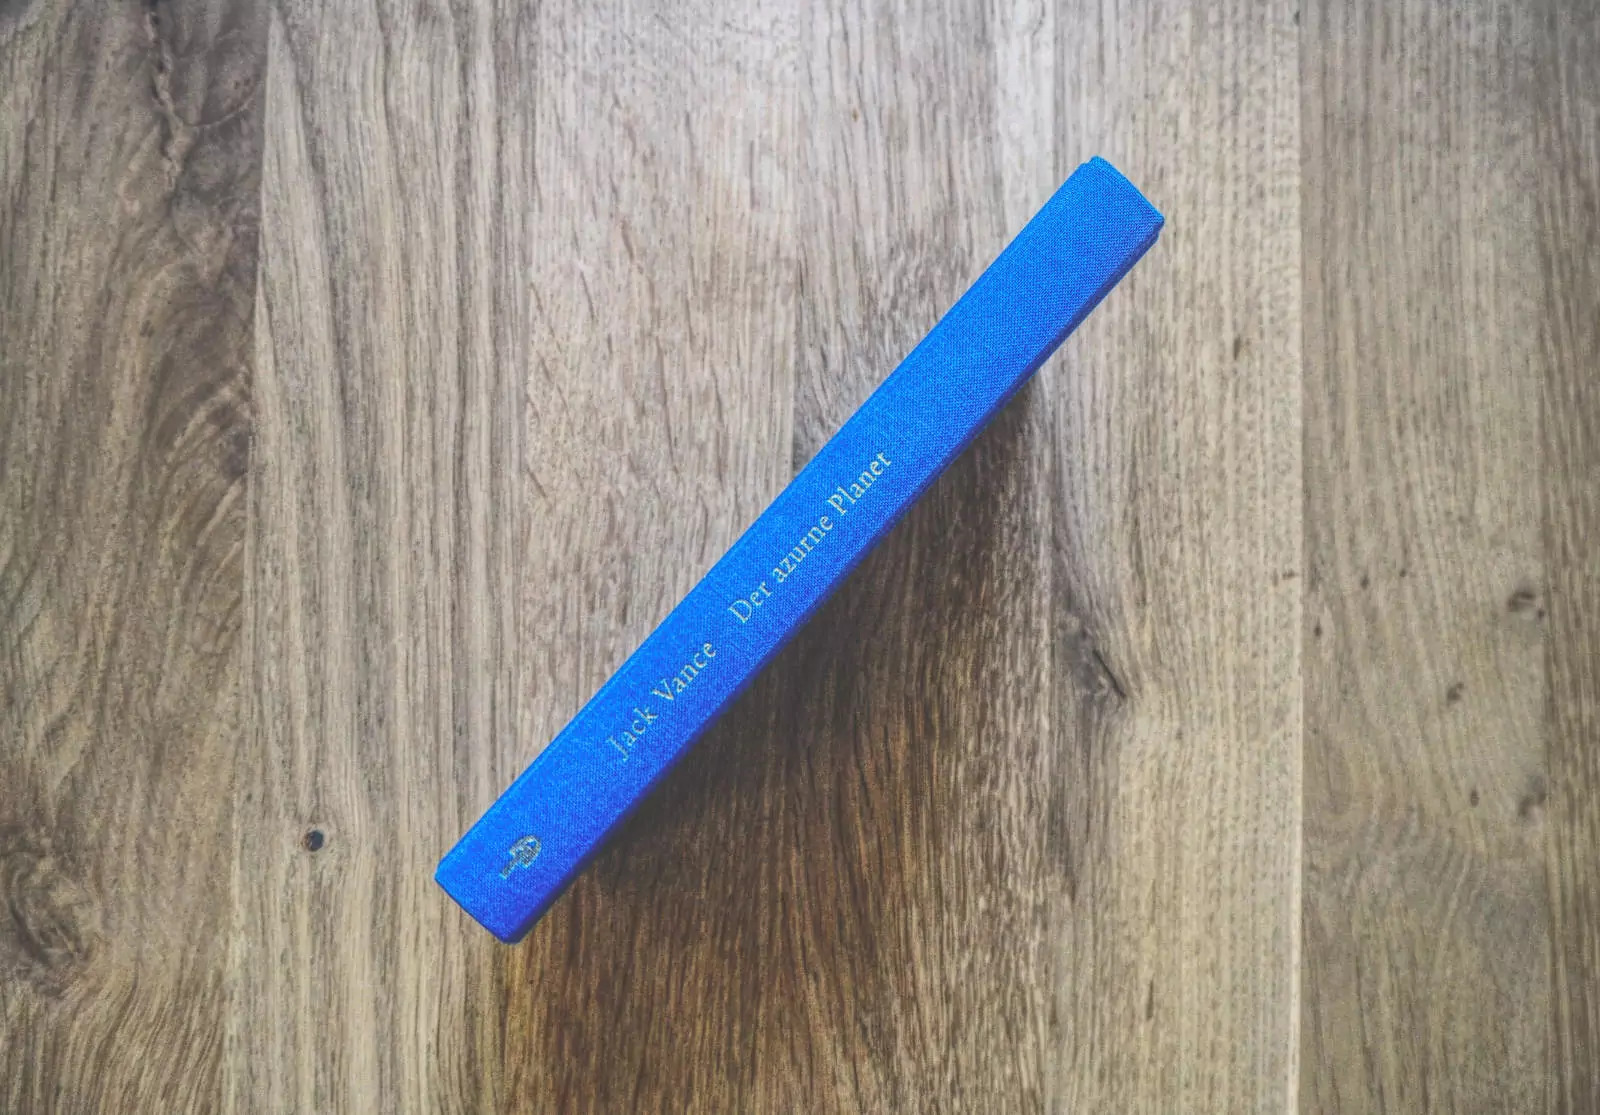 Auf einer Holzfläche liegt ein blaues Buch mit dem Titel „Der blaue Planet“ von Jack Vance.